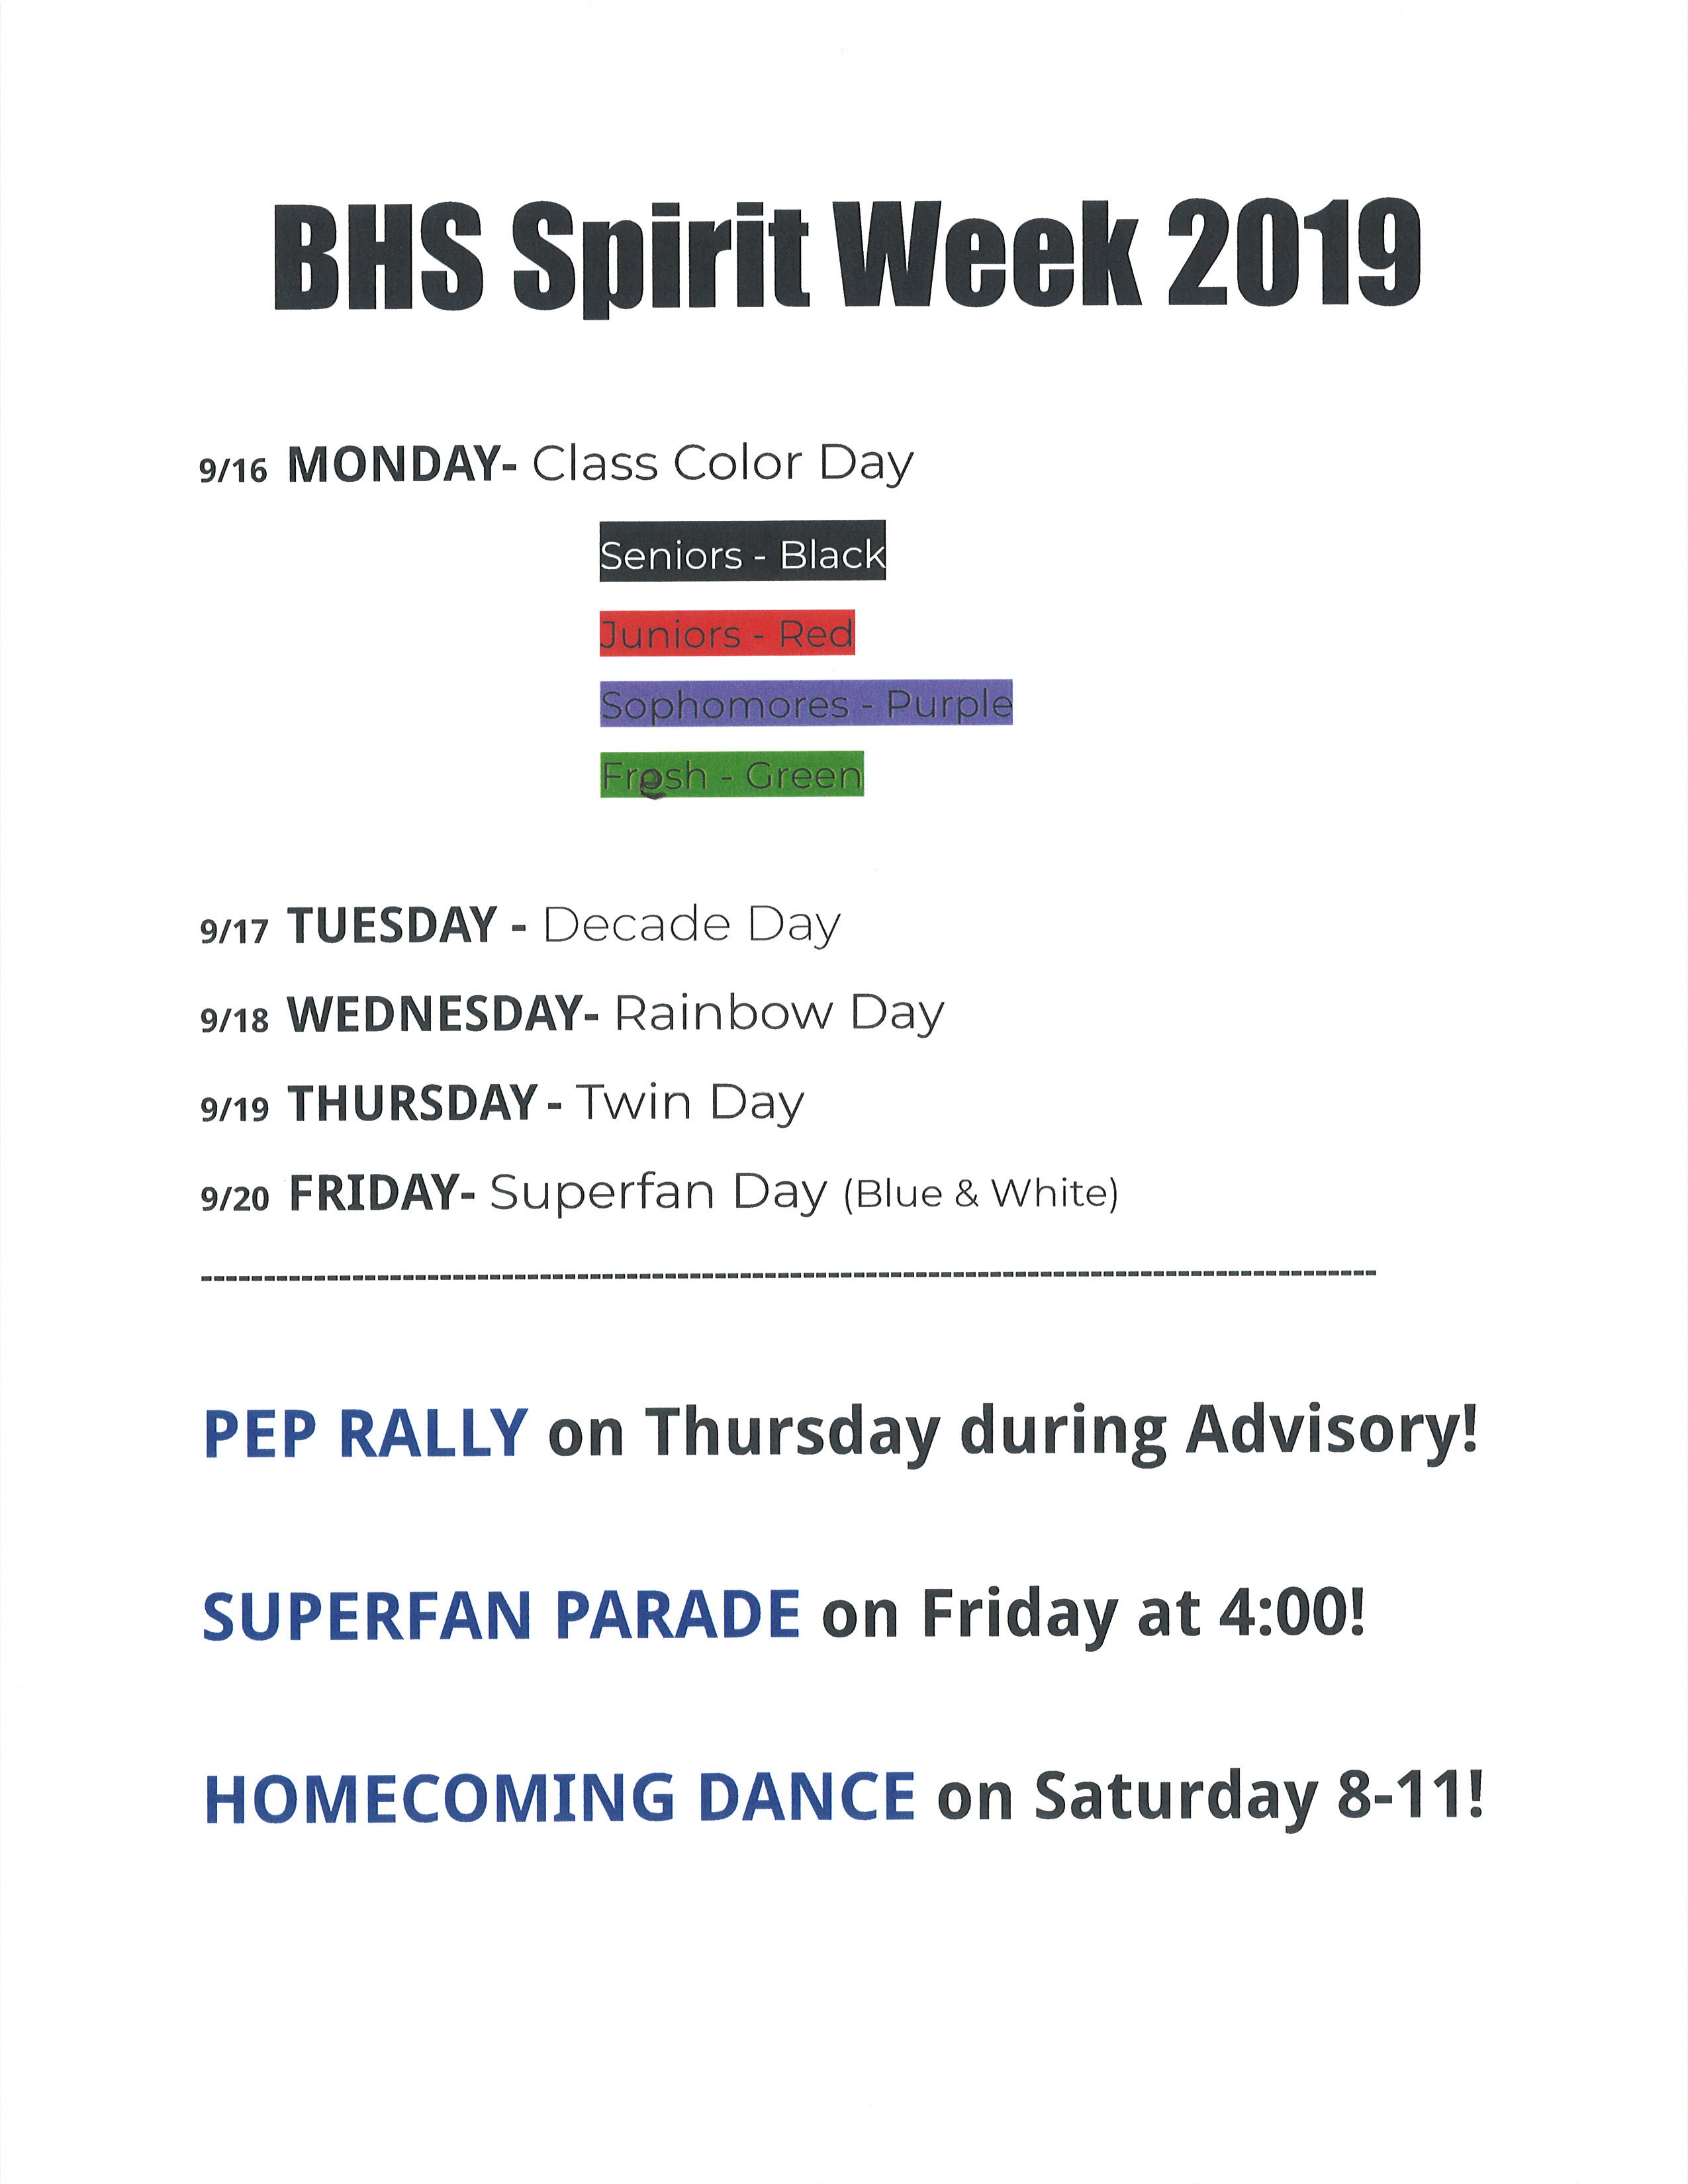 BHS spirit week schedule 19-20